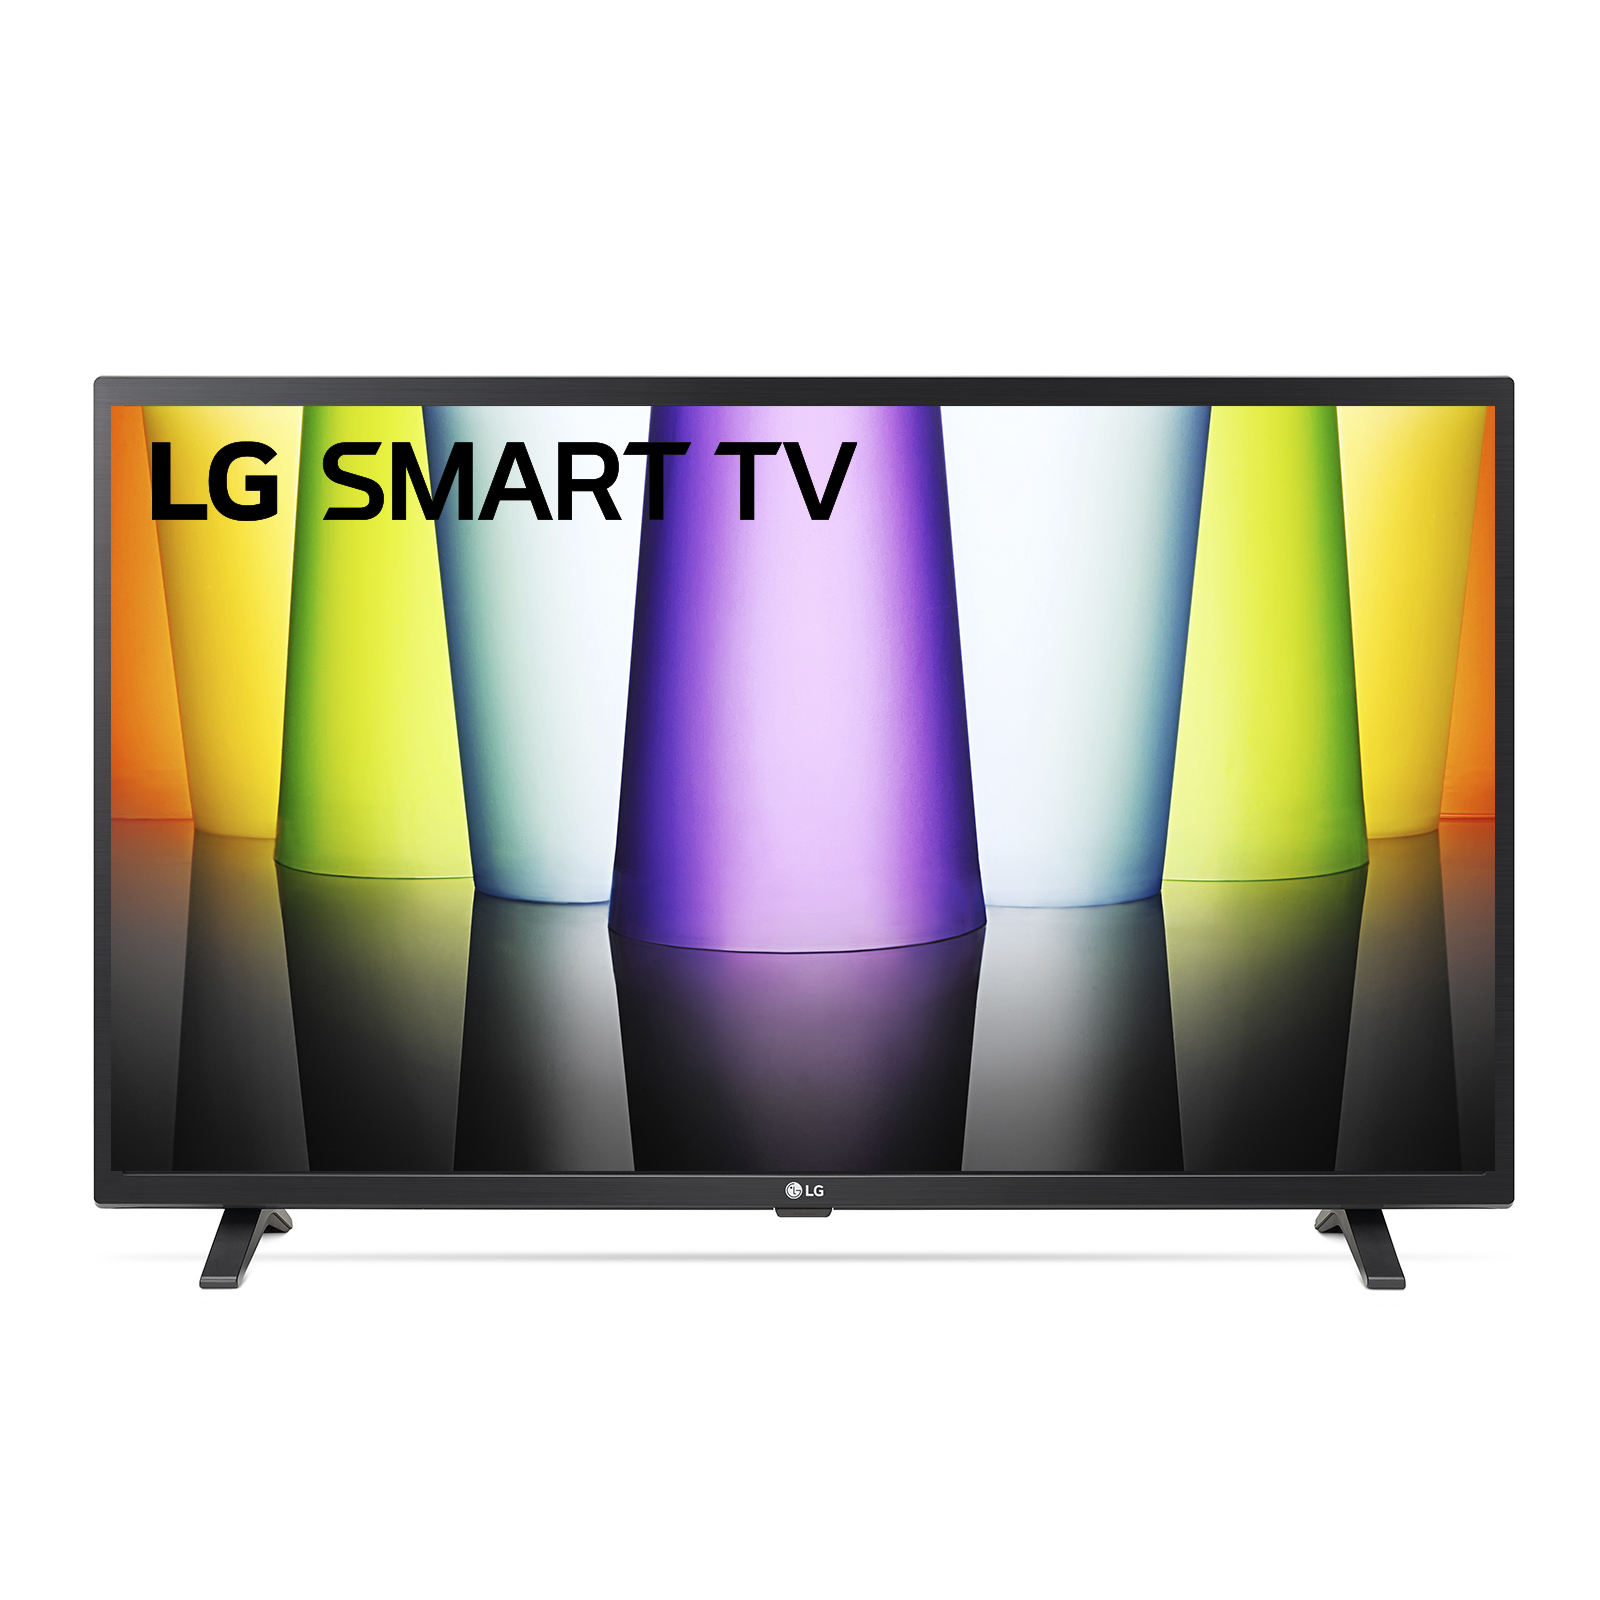 TV-32-LG-FHD-EU-SMART-CERAMIC-BLAC-USB-DVBT2-NEW